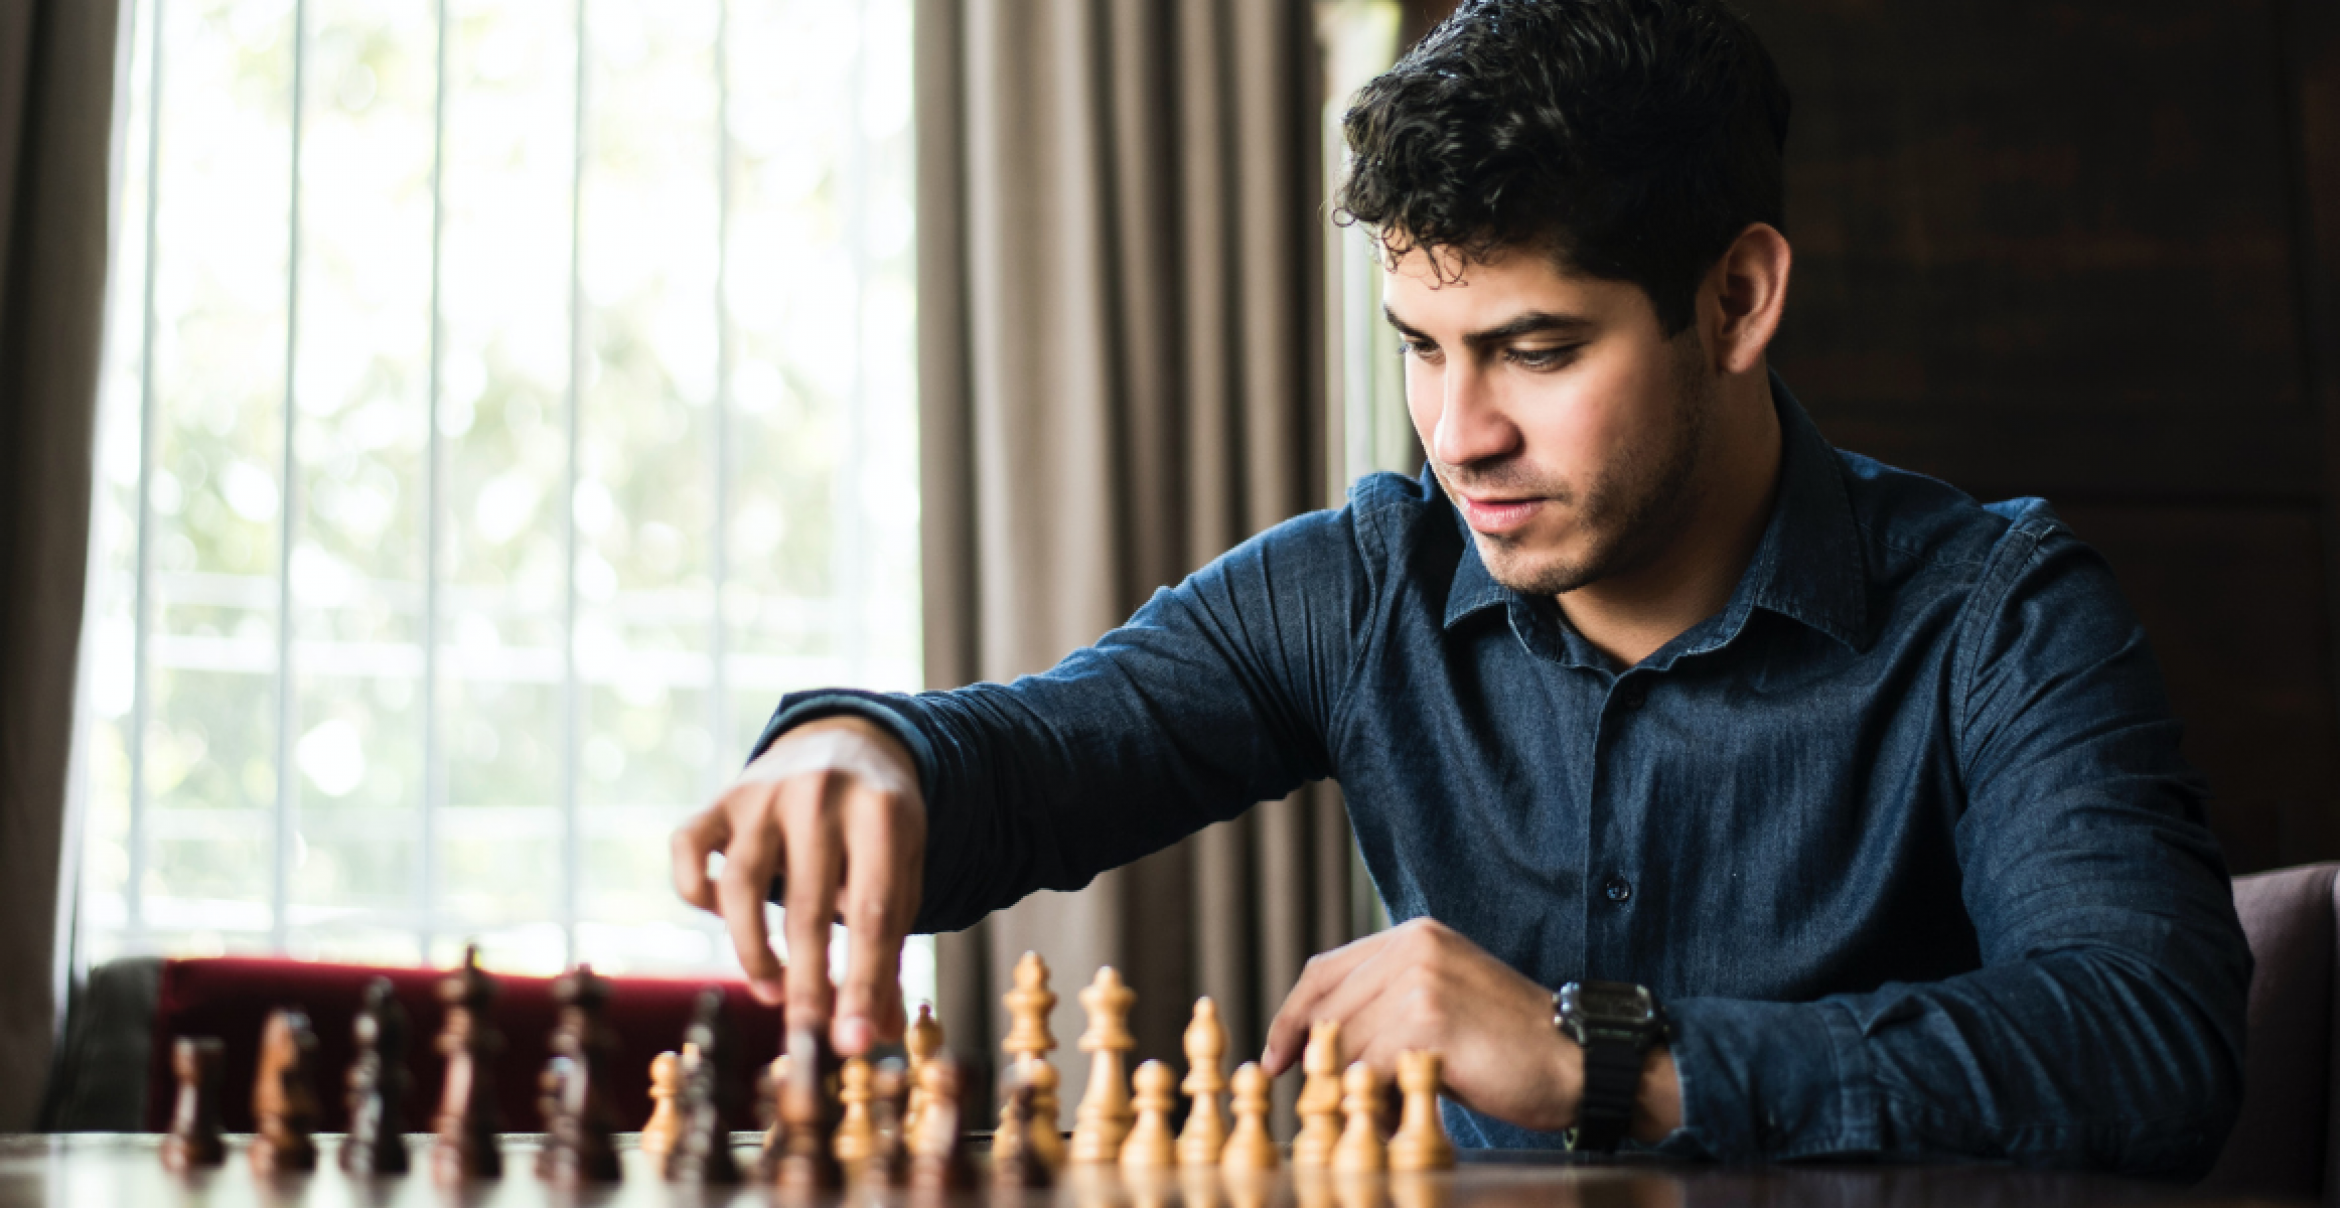 Analplug als Helferlein? Schach-Weltmeister wirft Newcomer Betrug vor